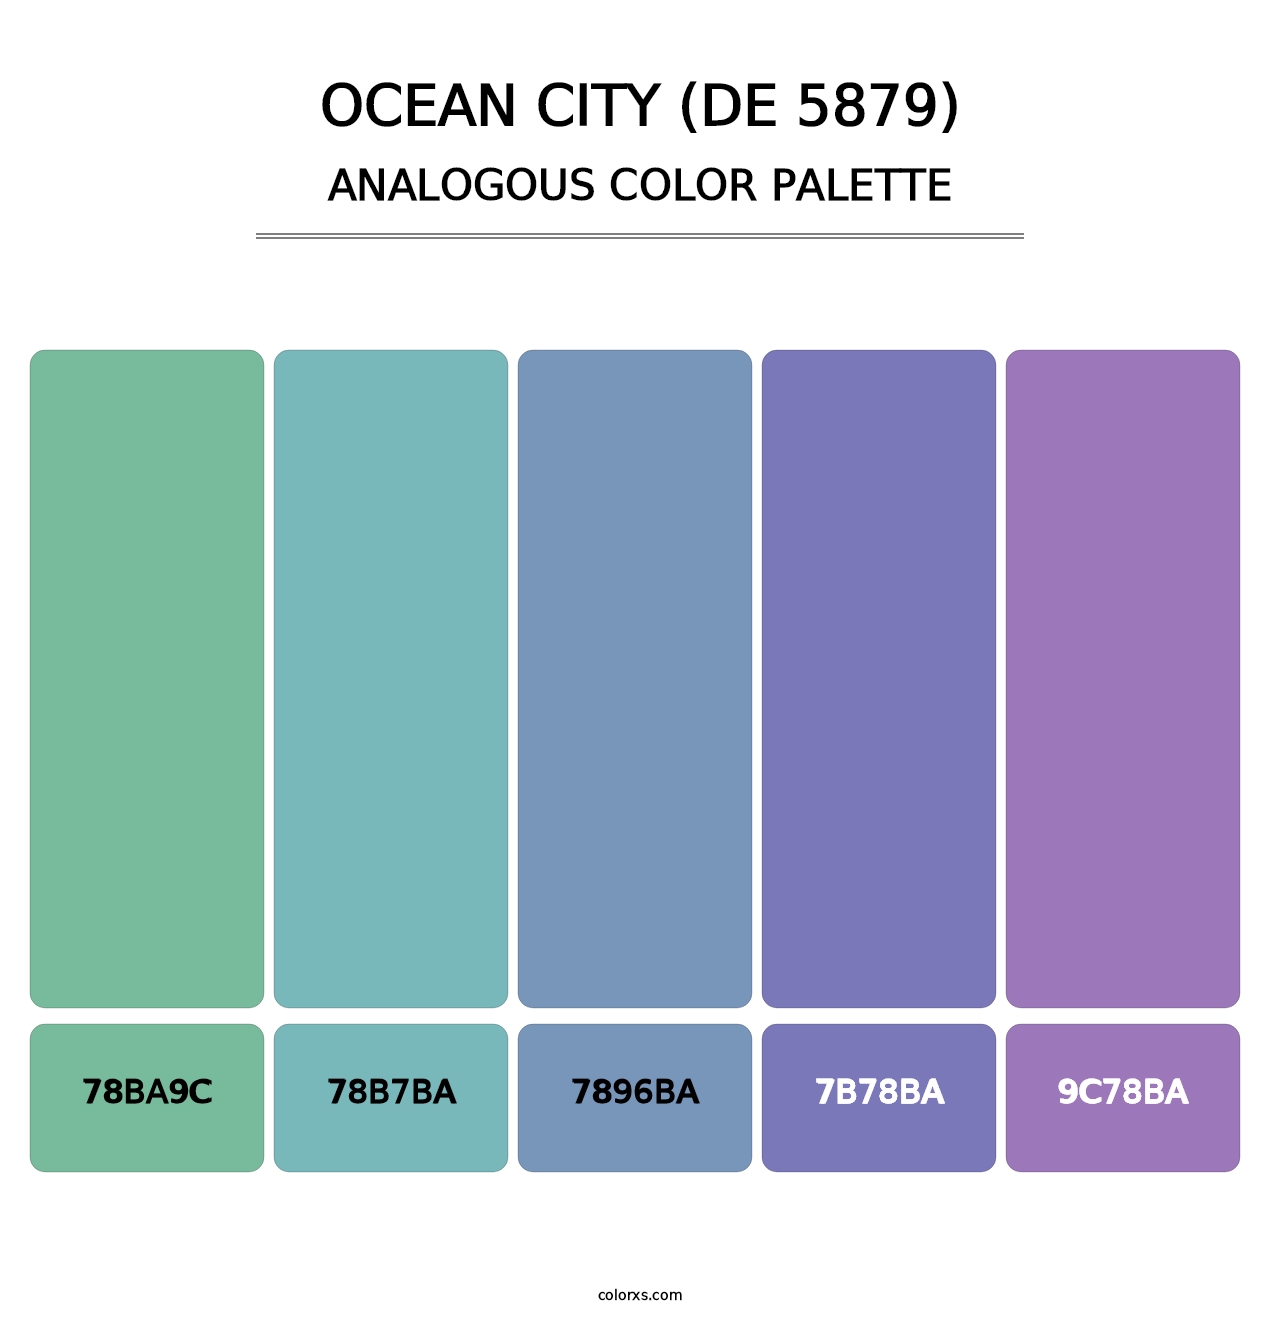 Ocean City (DE 5879) - Analogous Color Palette